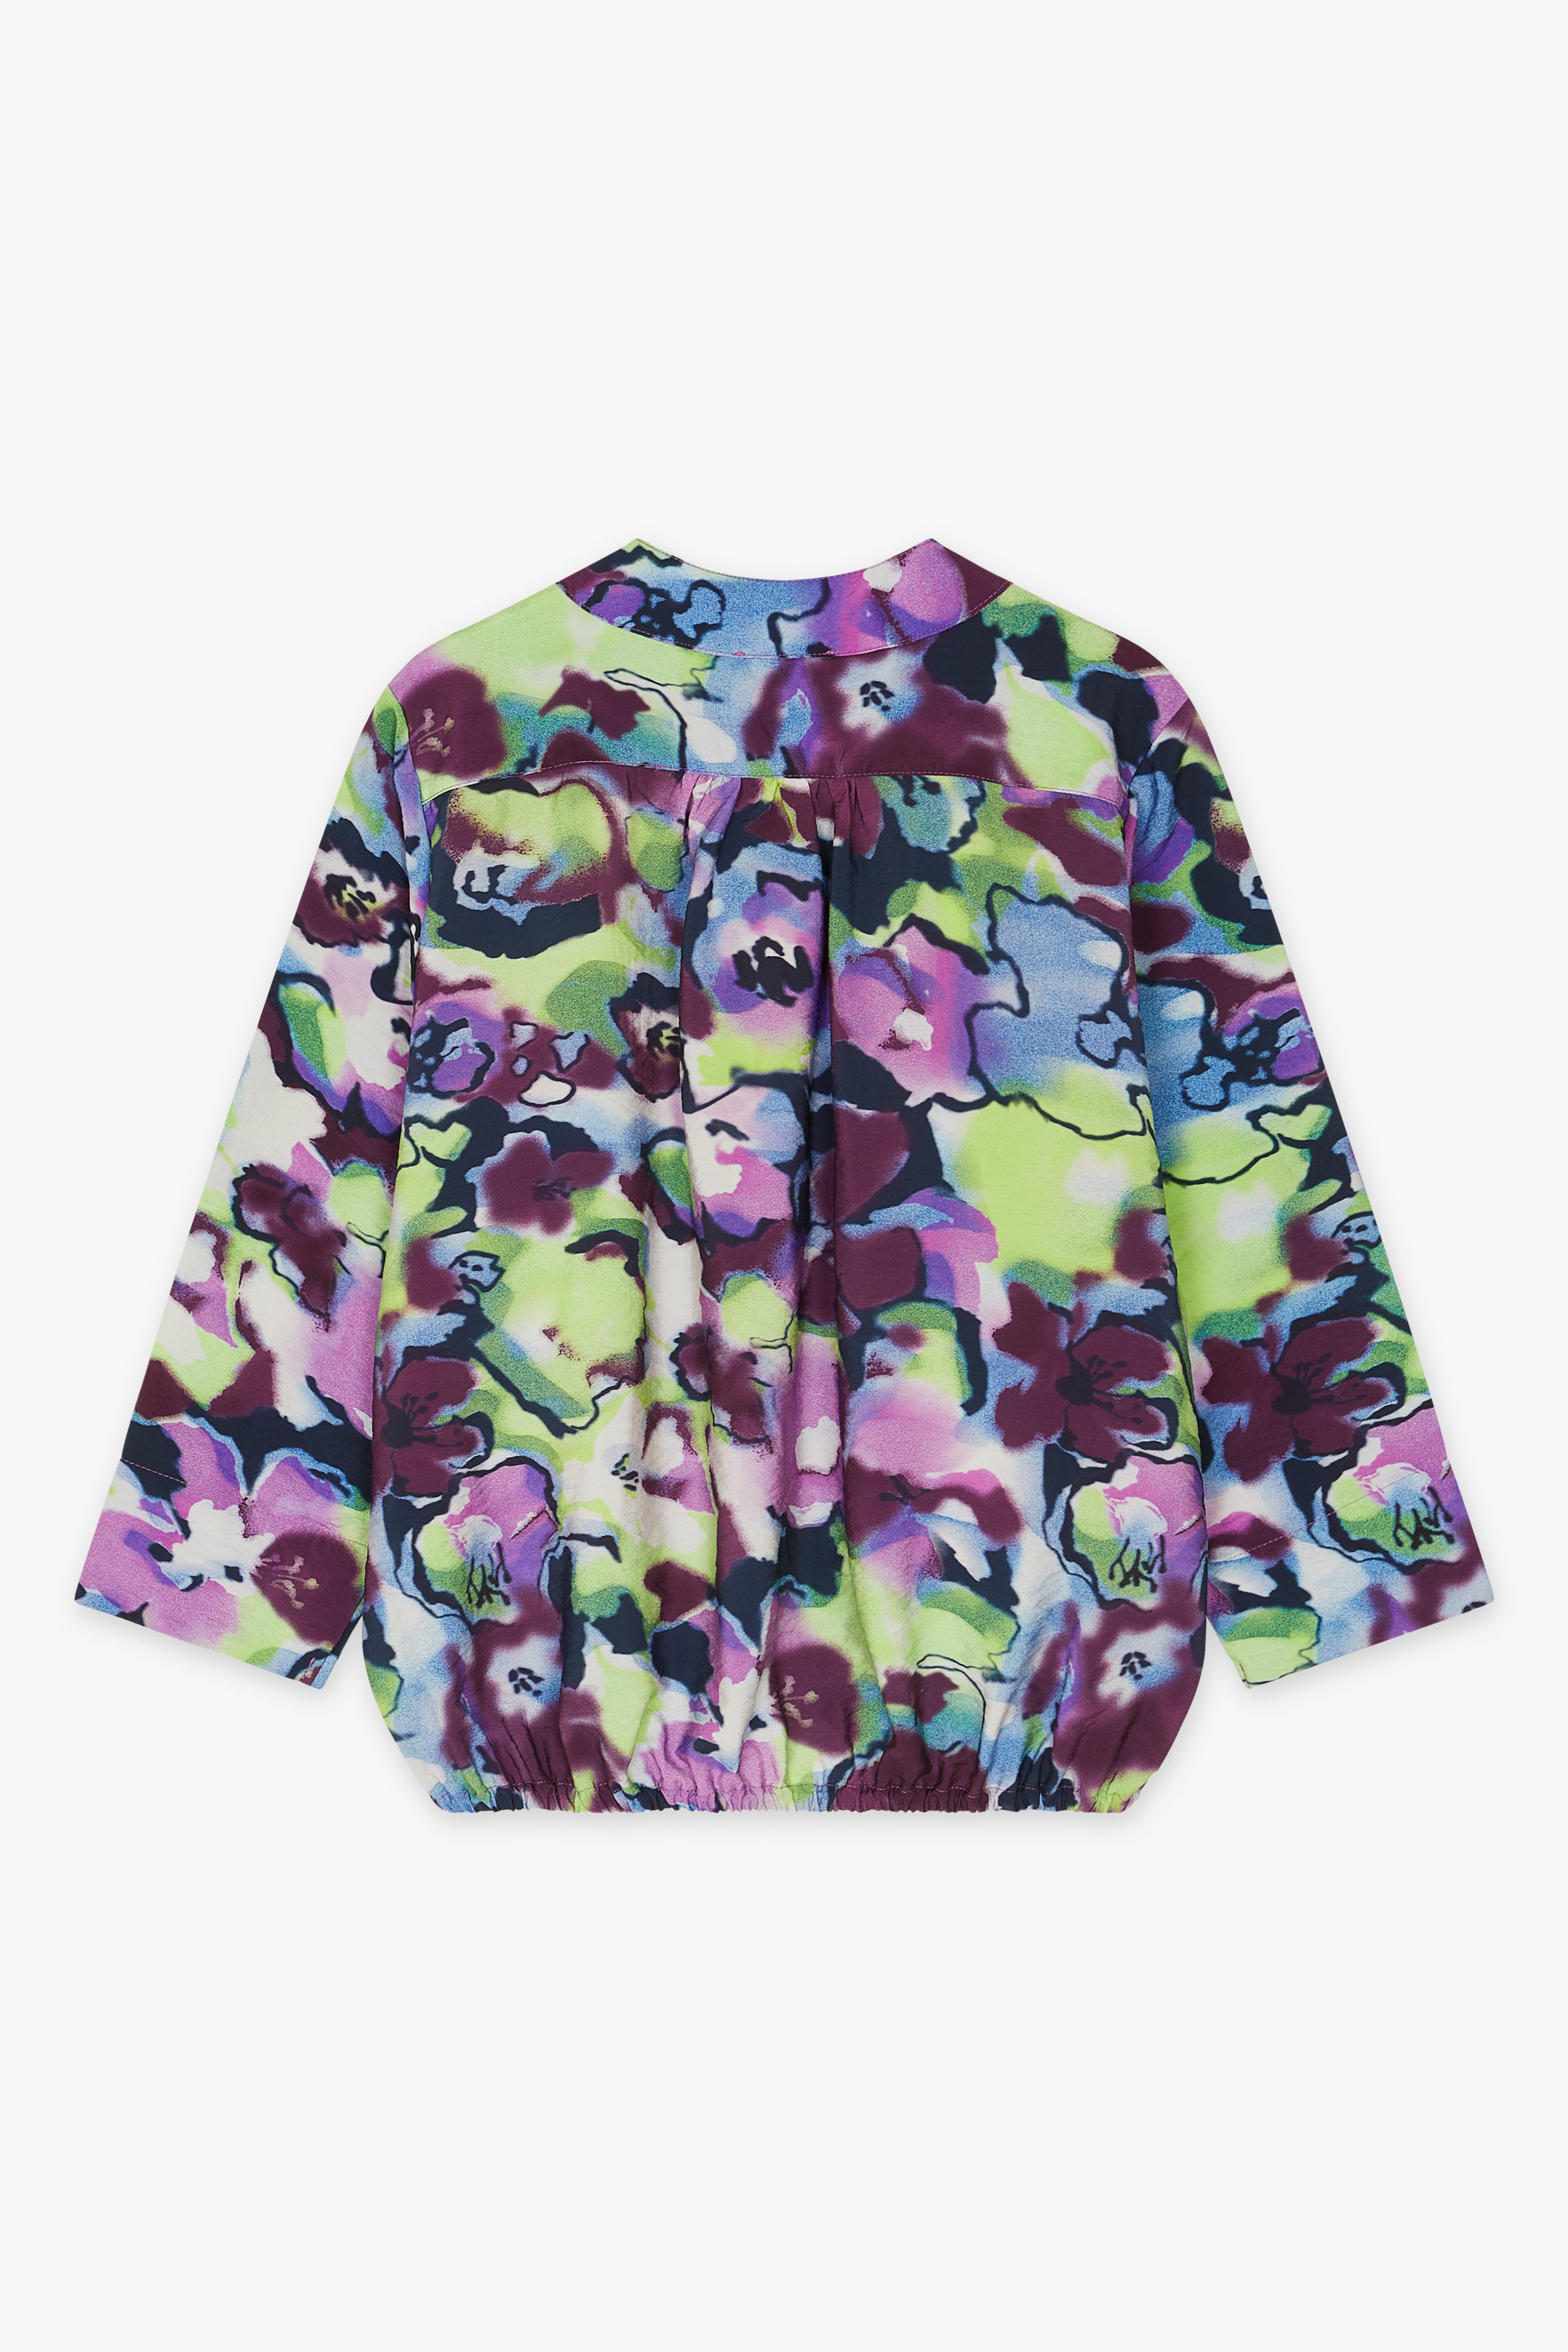 CKS Dames - LAREDO - blouse short sleeves - multicolor